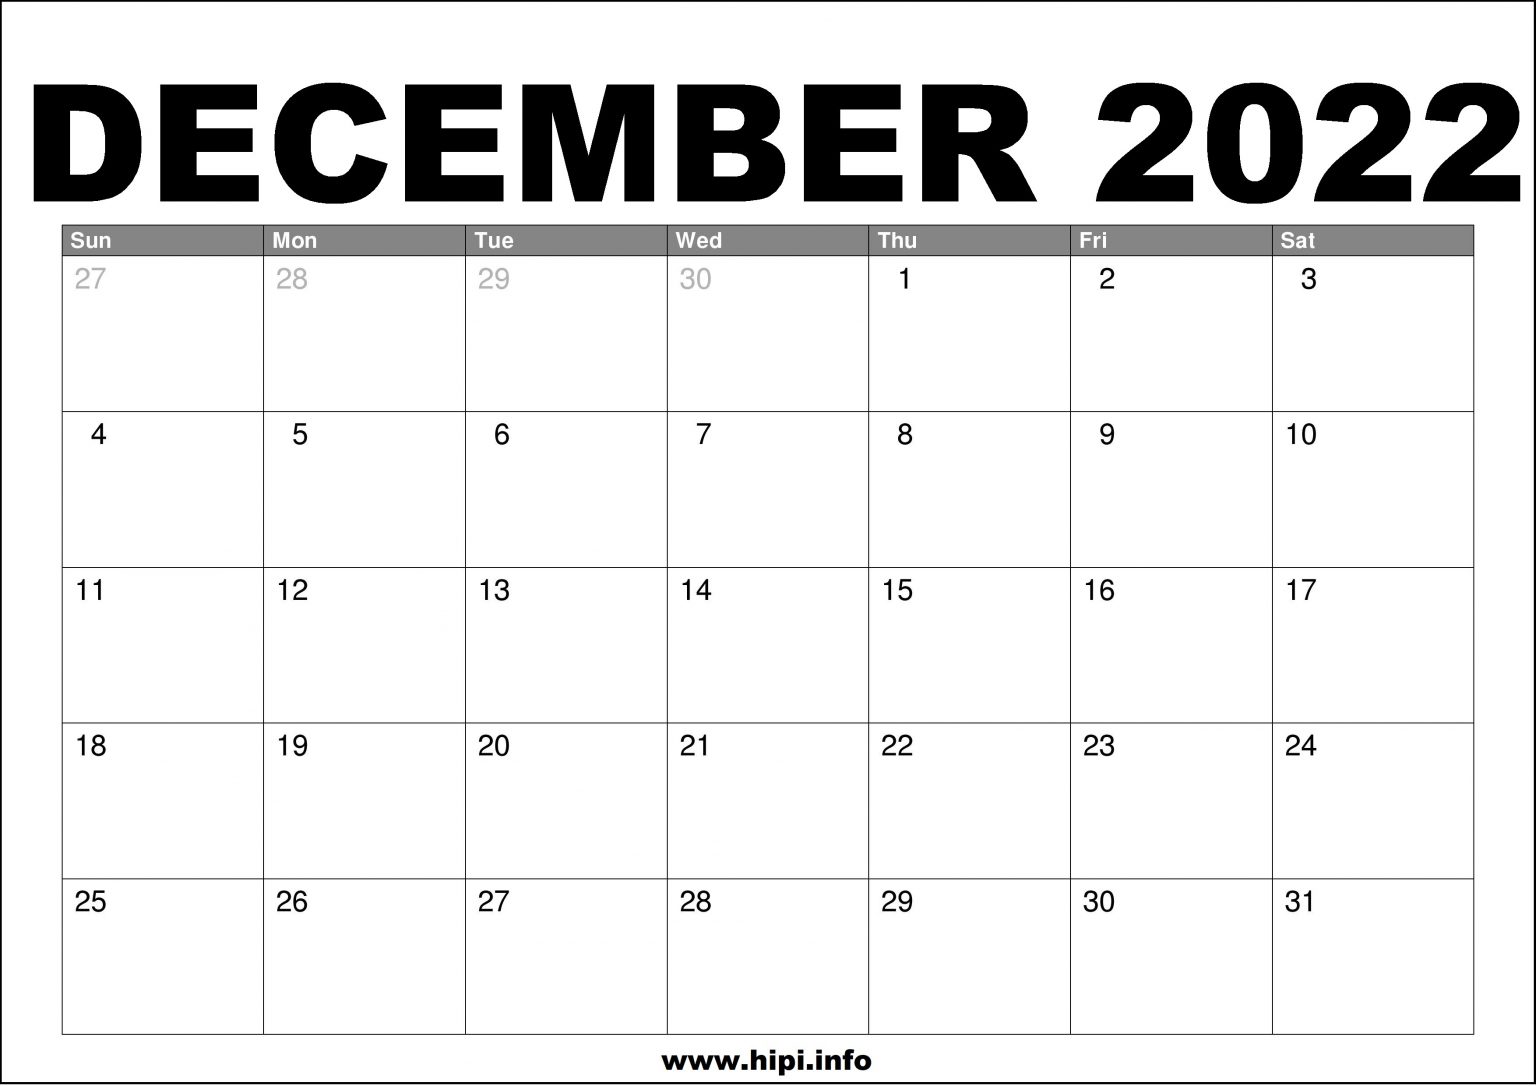 December 2022 Calendar Printable Free Hipi.info